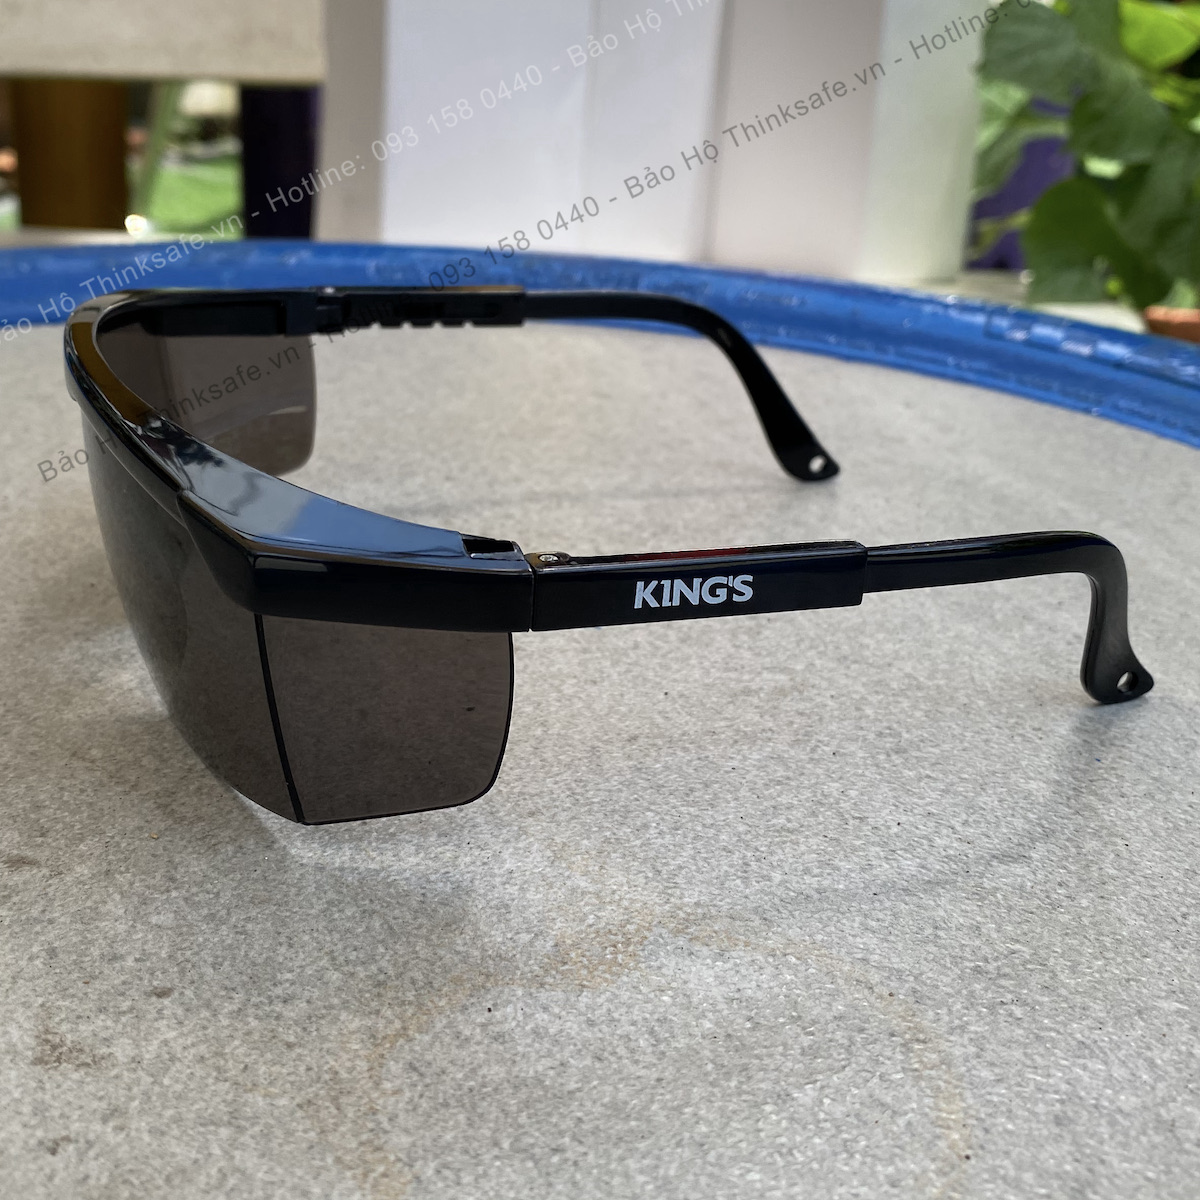 Kính chống bụi King's KY152 phòng dịch chống tia UV kính bảo hộ lao động chống bụi chống xước, đọng sương bảo vệ mắt trong lao động, đi xe máy (màu đen)